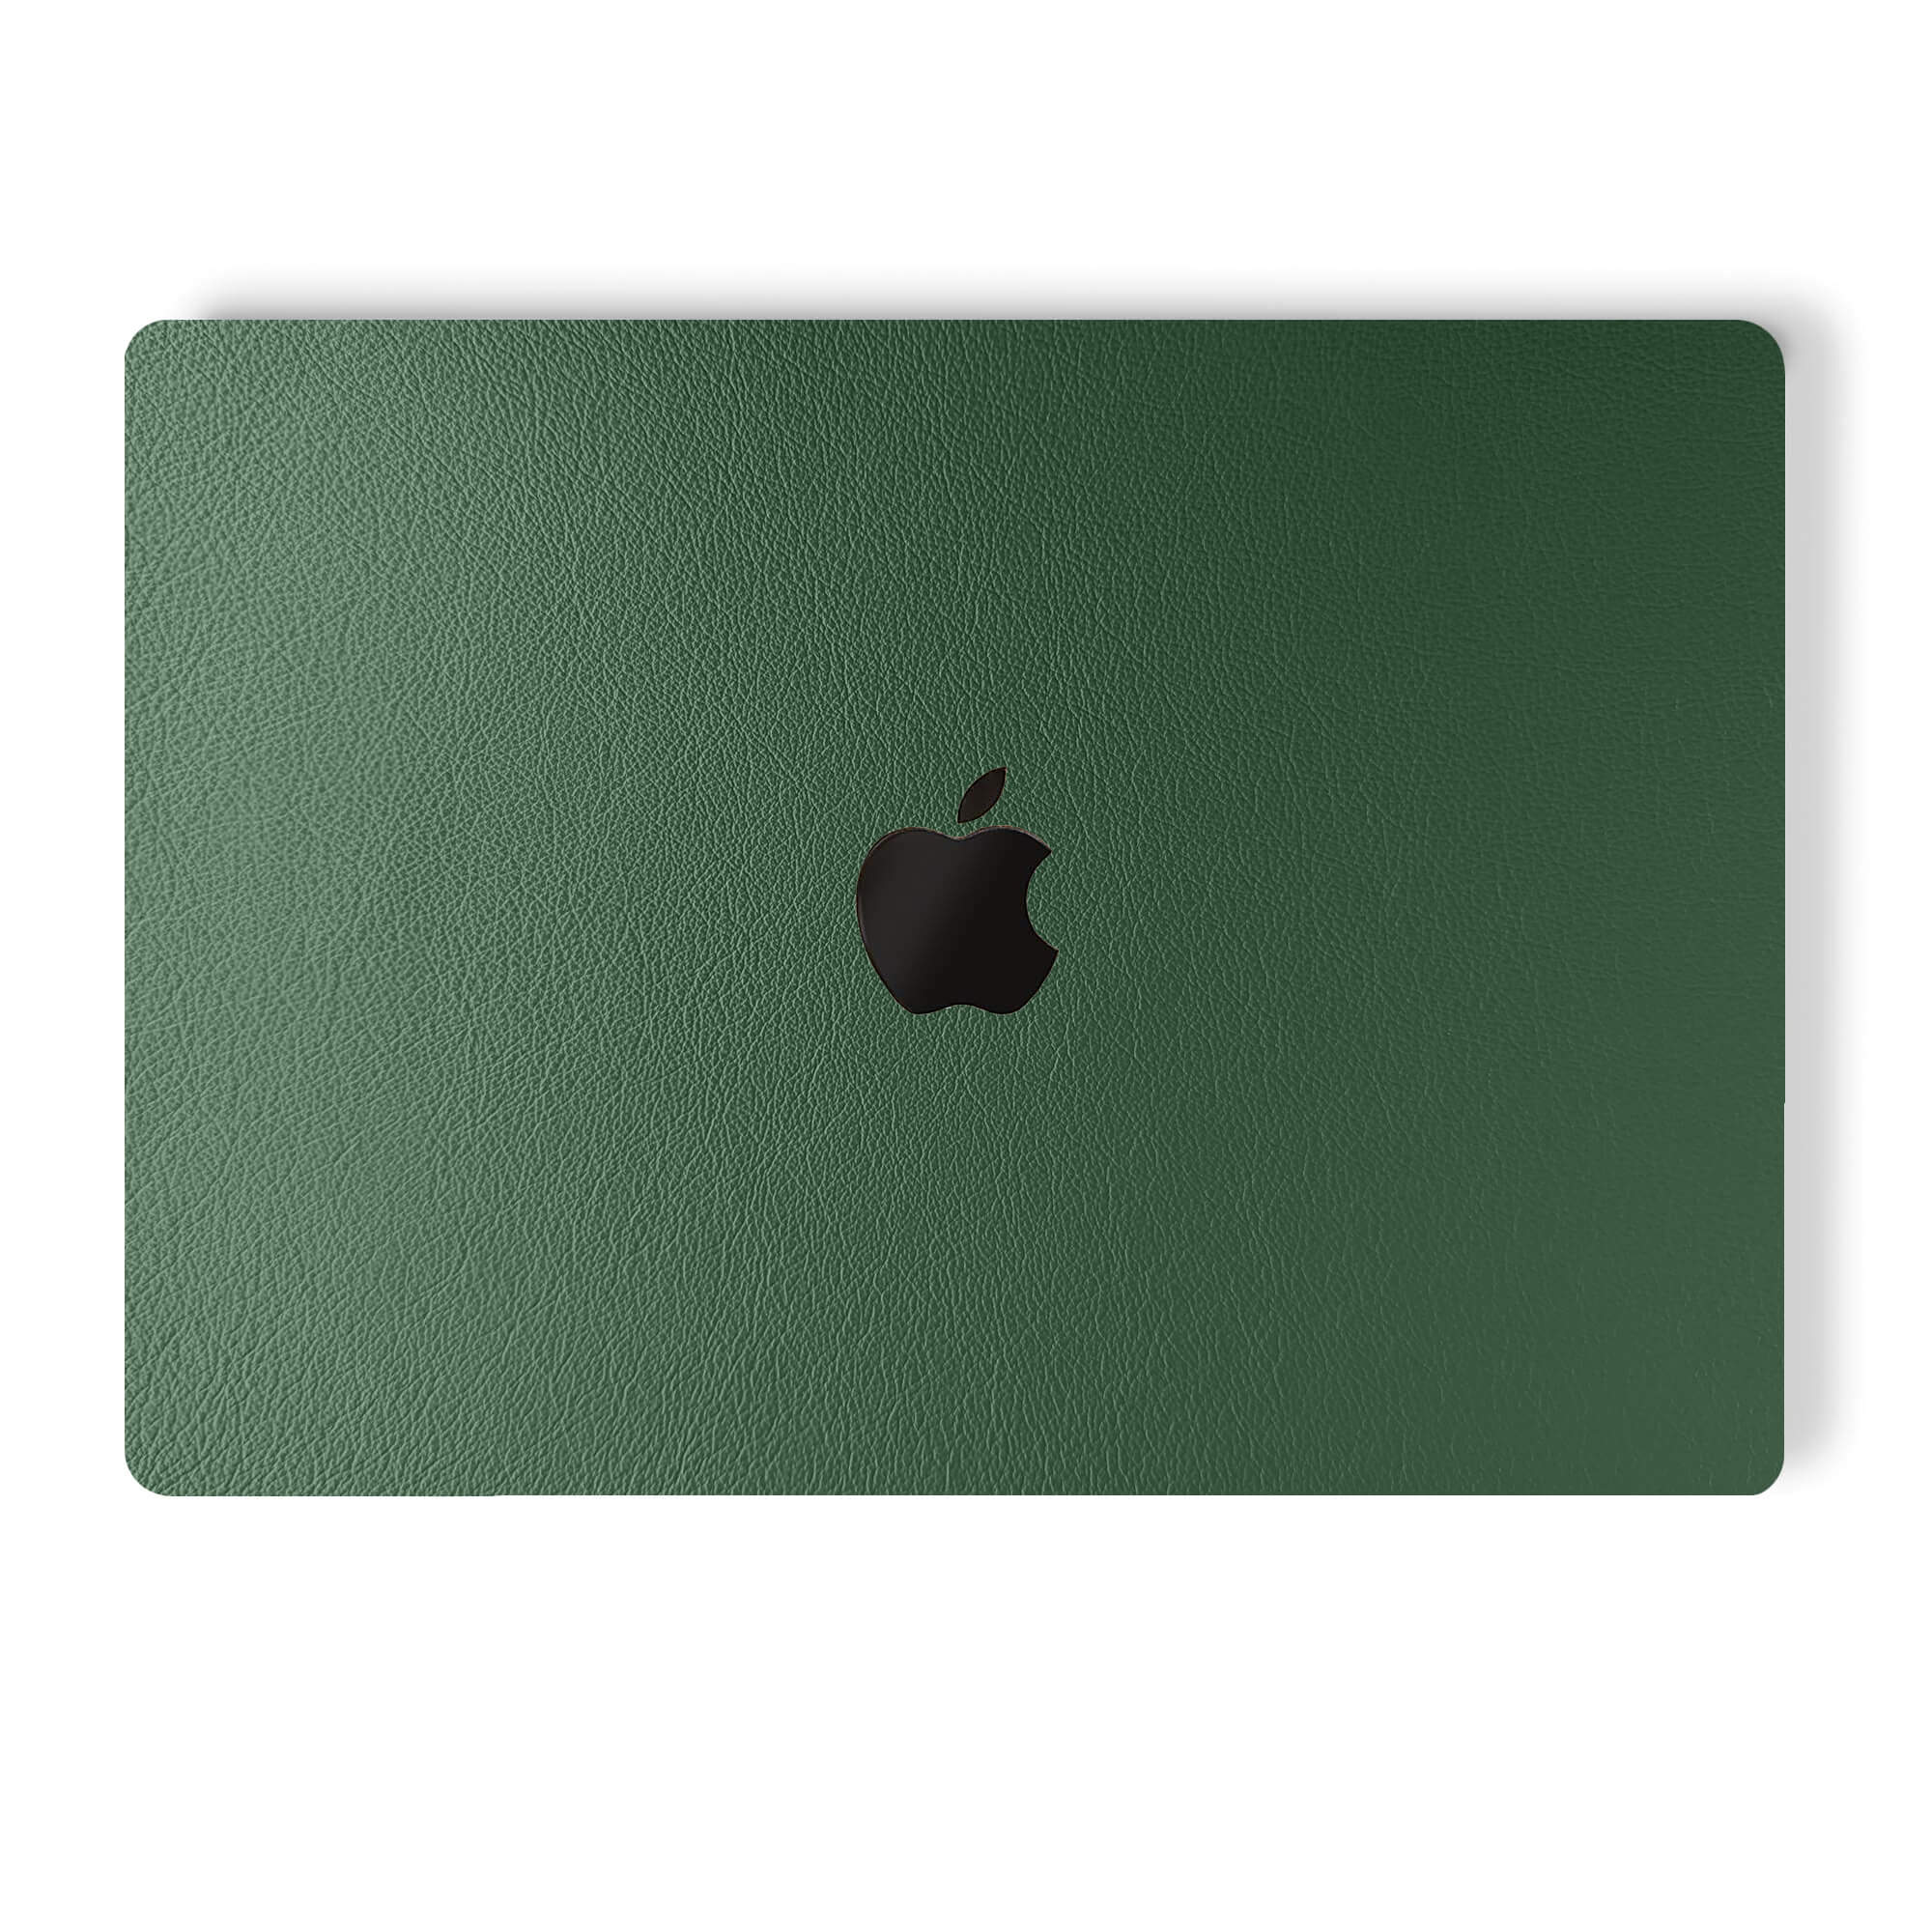 alt:Leather MacBook Skin| var:forest-green